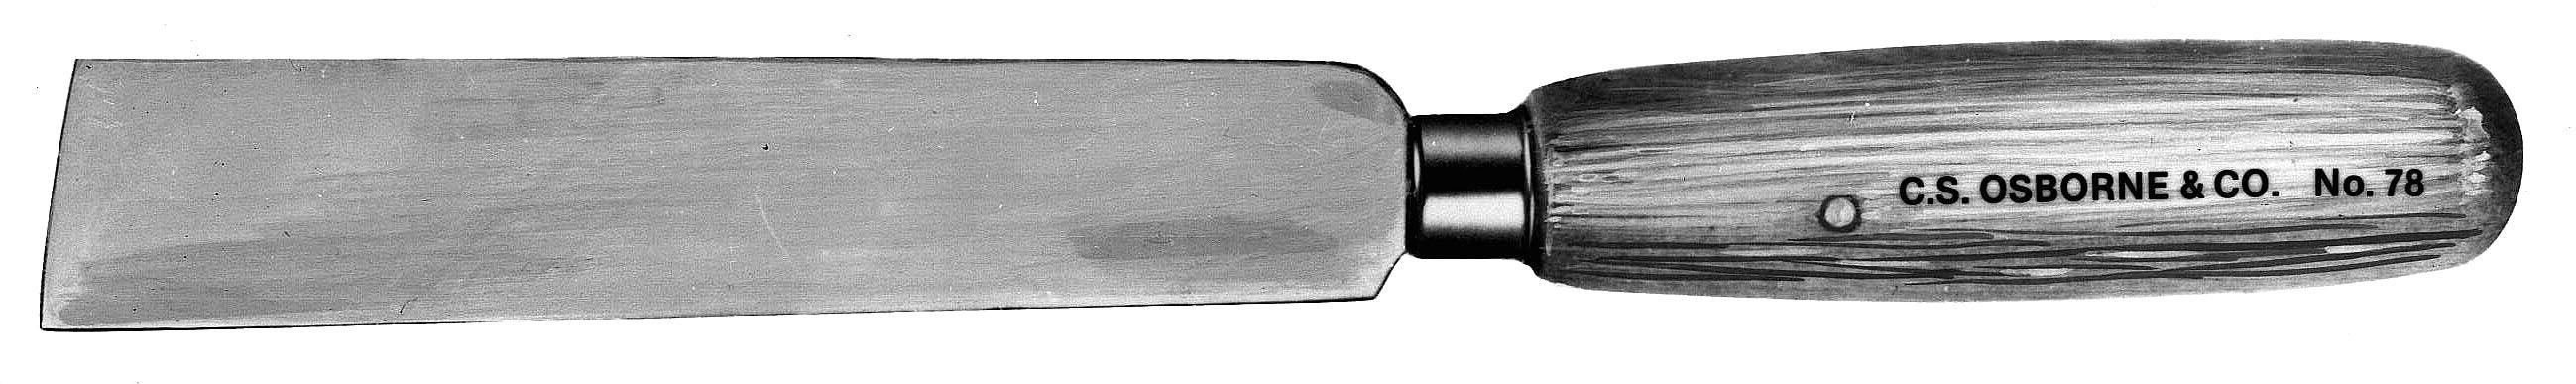 C.S. Osborne Knife - Alan Richard Textiles, LTD C.S. Osborne Knives